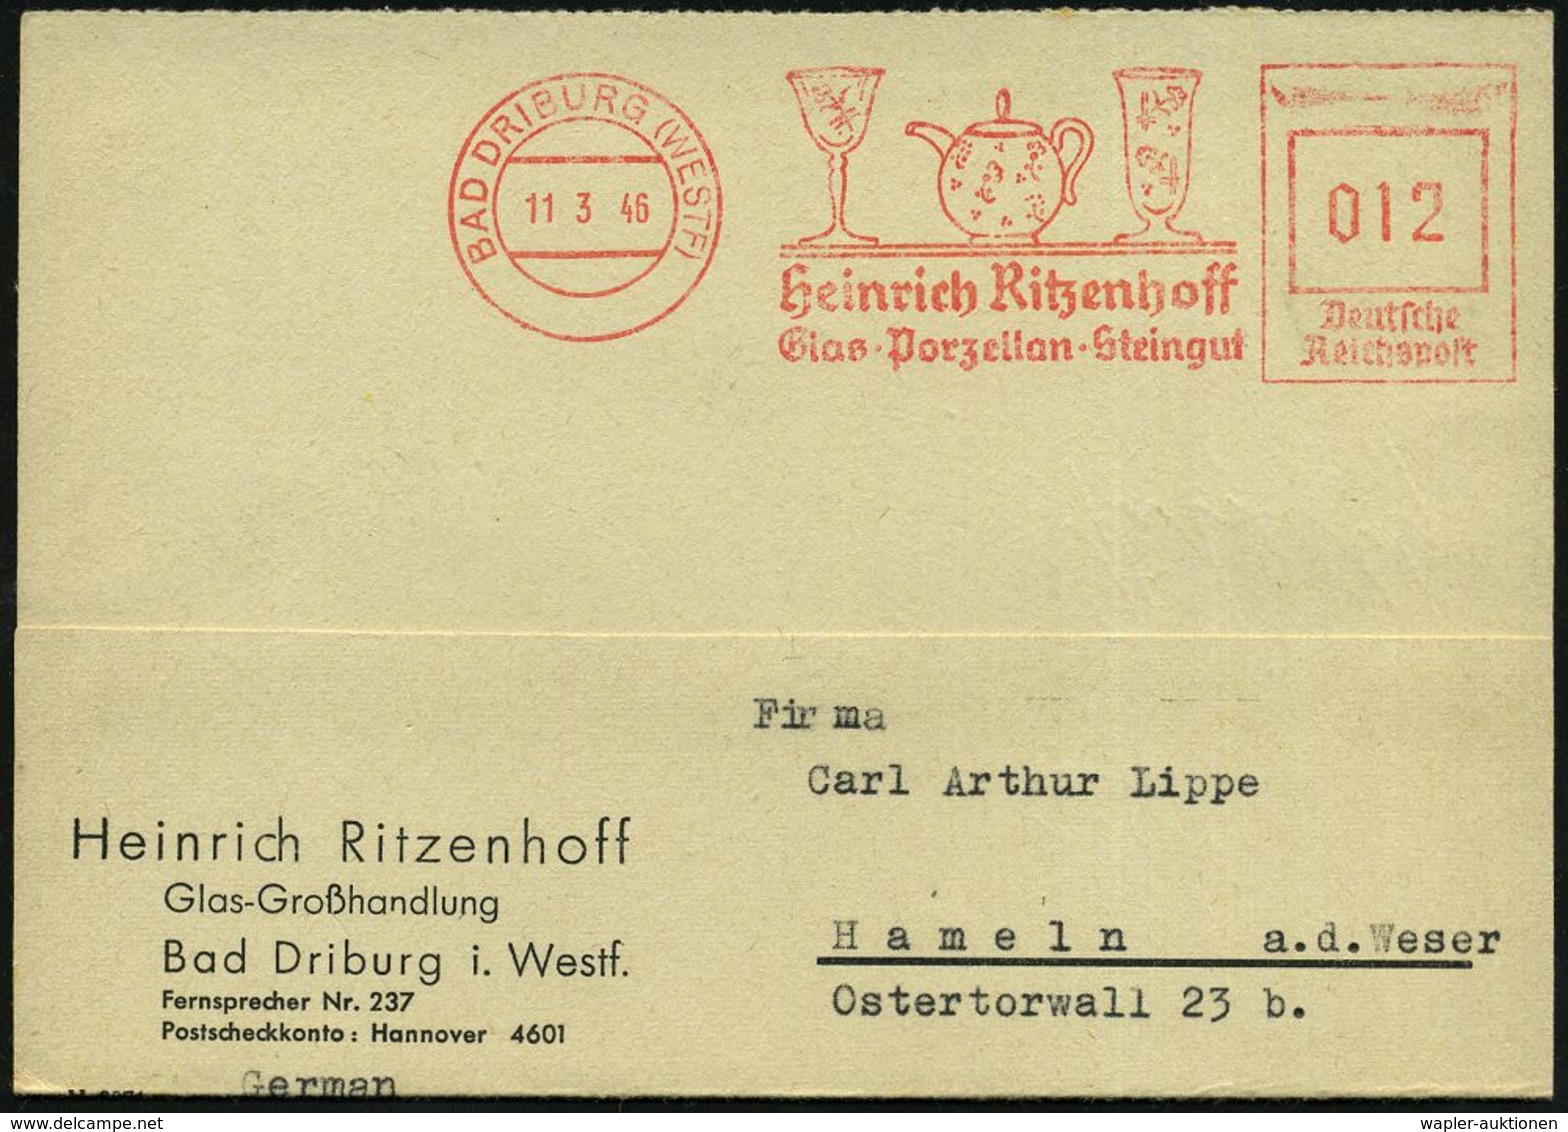 KERAMIK / PORZELLAN / MANUFAKTUREN : BAD DRIBURG (WESTF)/ Heinrich Ritzenhoff/ Glas-Porzellan-Steingut 1946 (11.3.) Apti - Porzellan